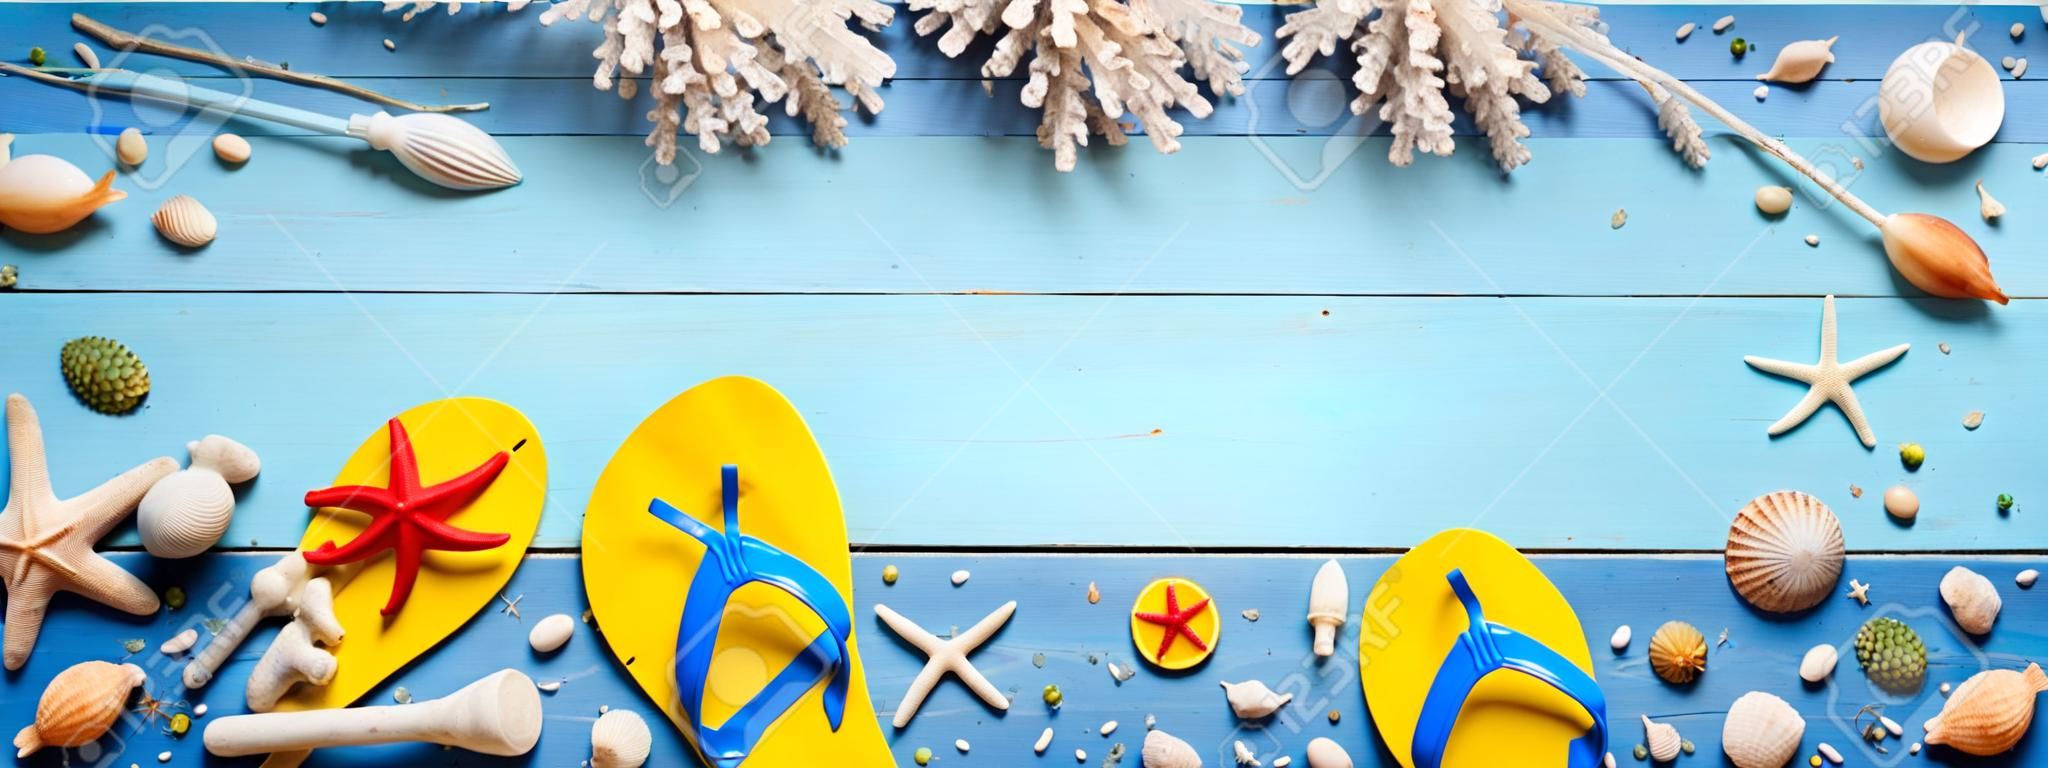 Strandzubehör auf Blue Plank - Summer Holiday Banner